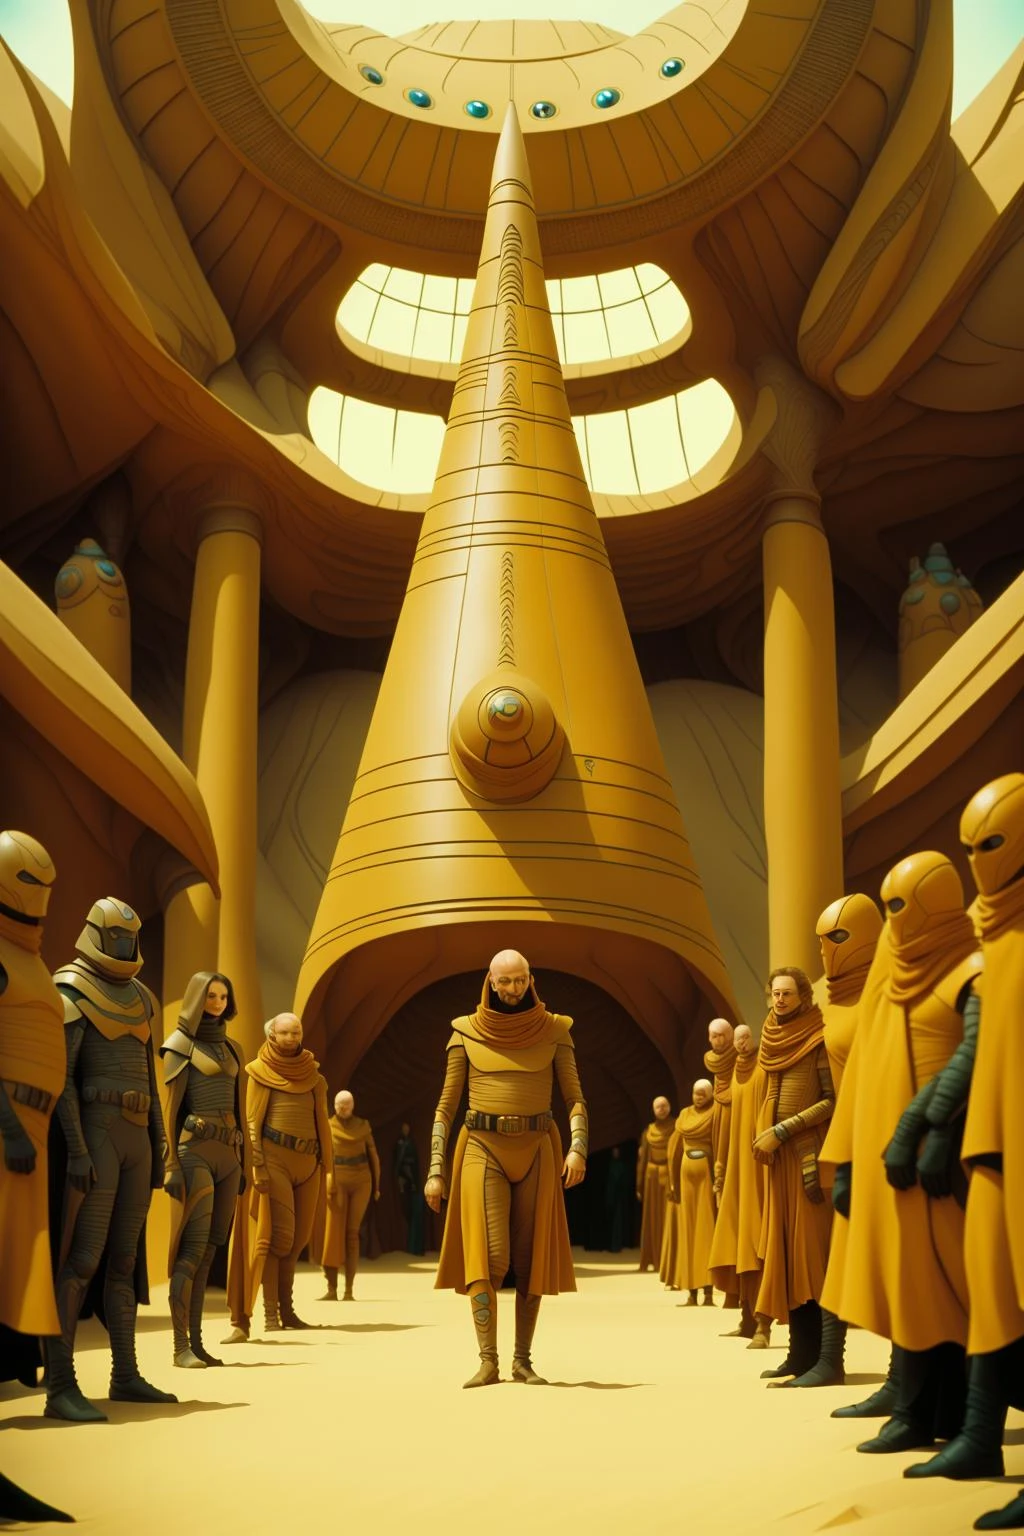 영화 듄의 등장인물, a man in a yellow suit 서 있는 in a room with a giant red cone , 1남, 서 있는, 남성 집중, 군대, 마스크, 무엇, 초현실적 , 공상 과학, 거리를 걷고 있는 많은 사람들